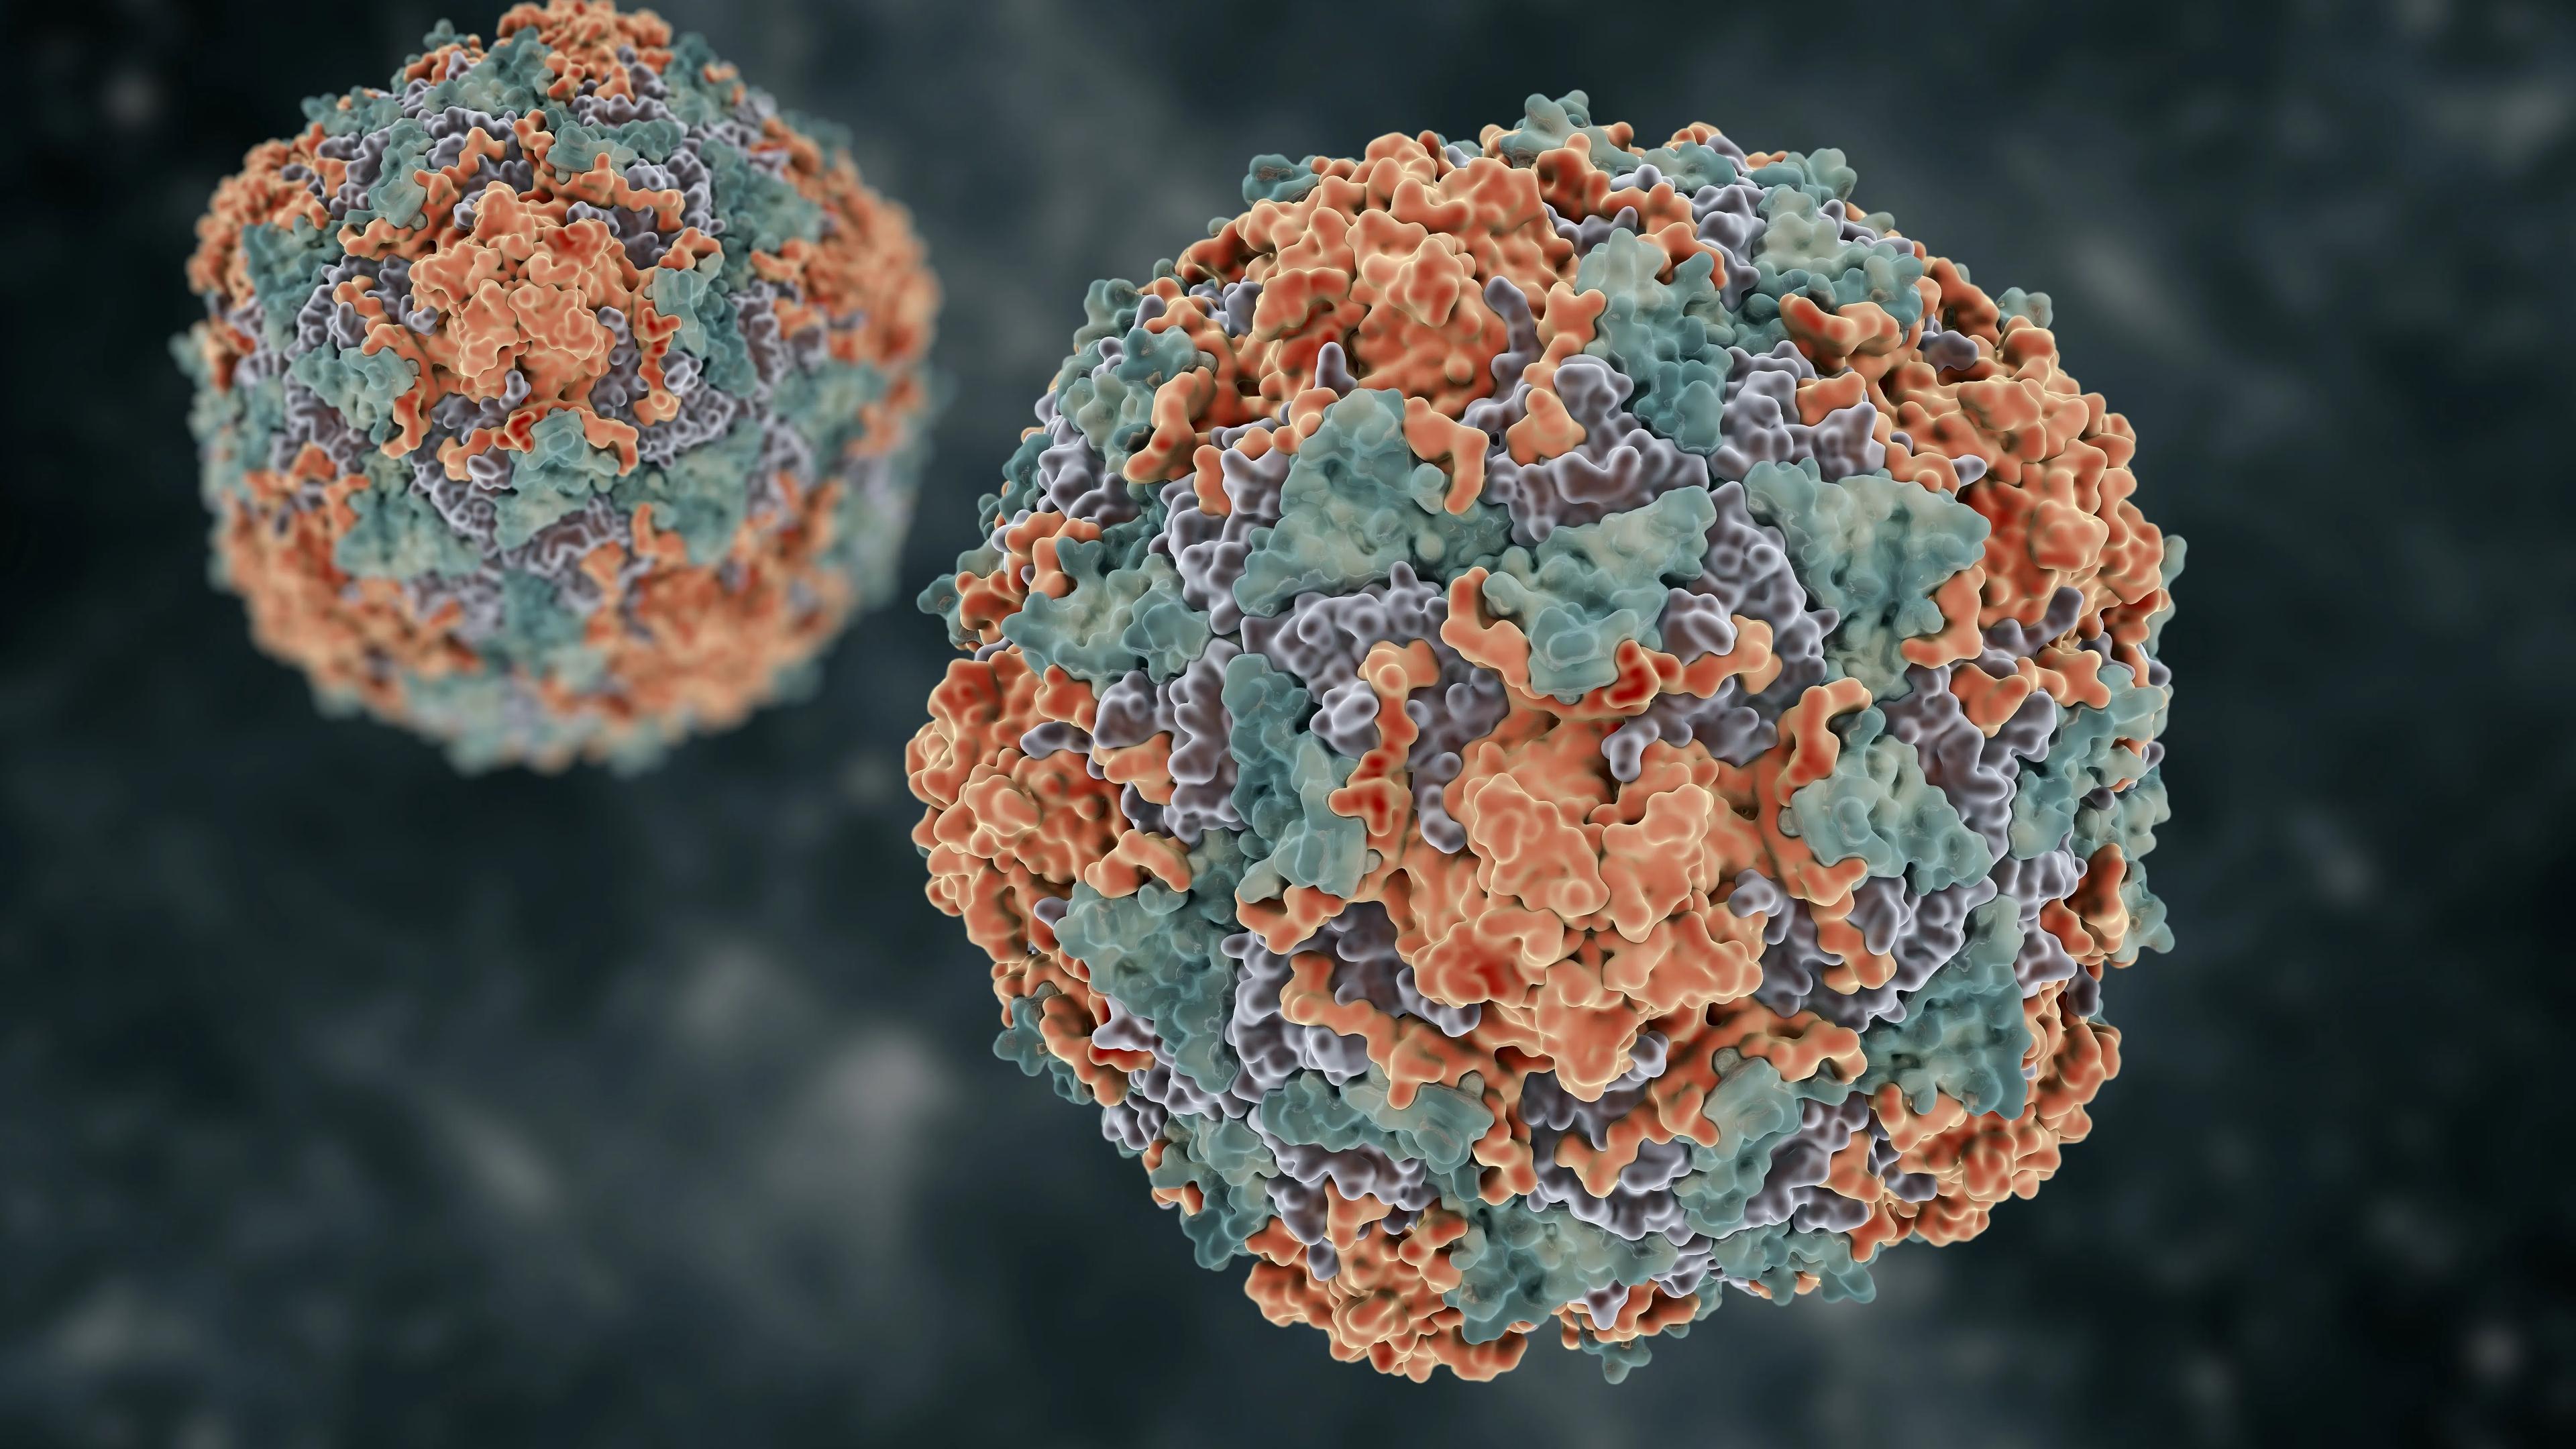 Вирус гепатита B заперли в клетке из ДНК